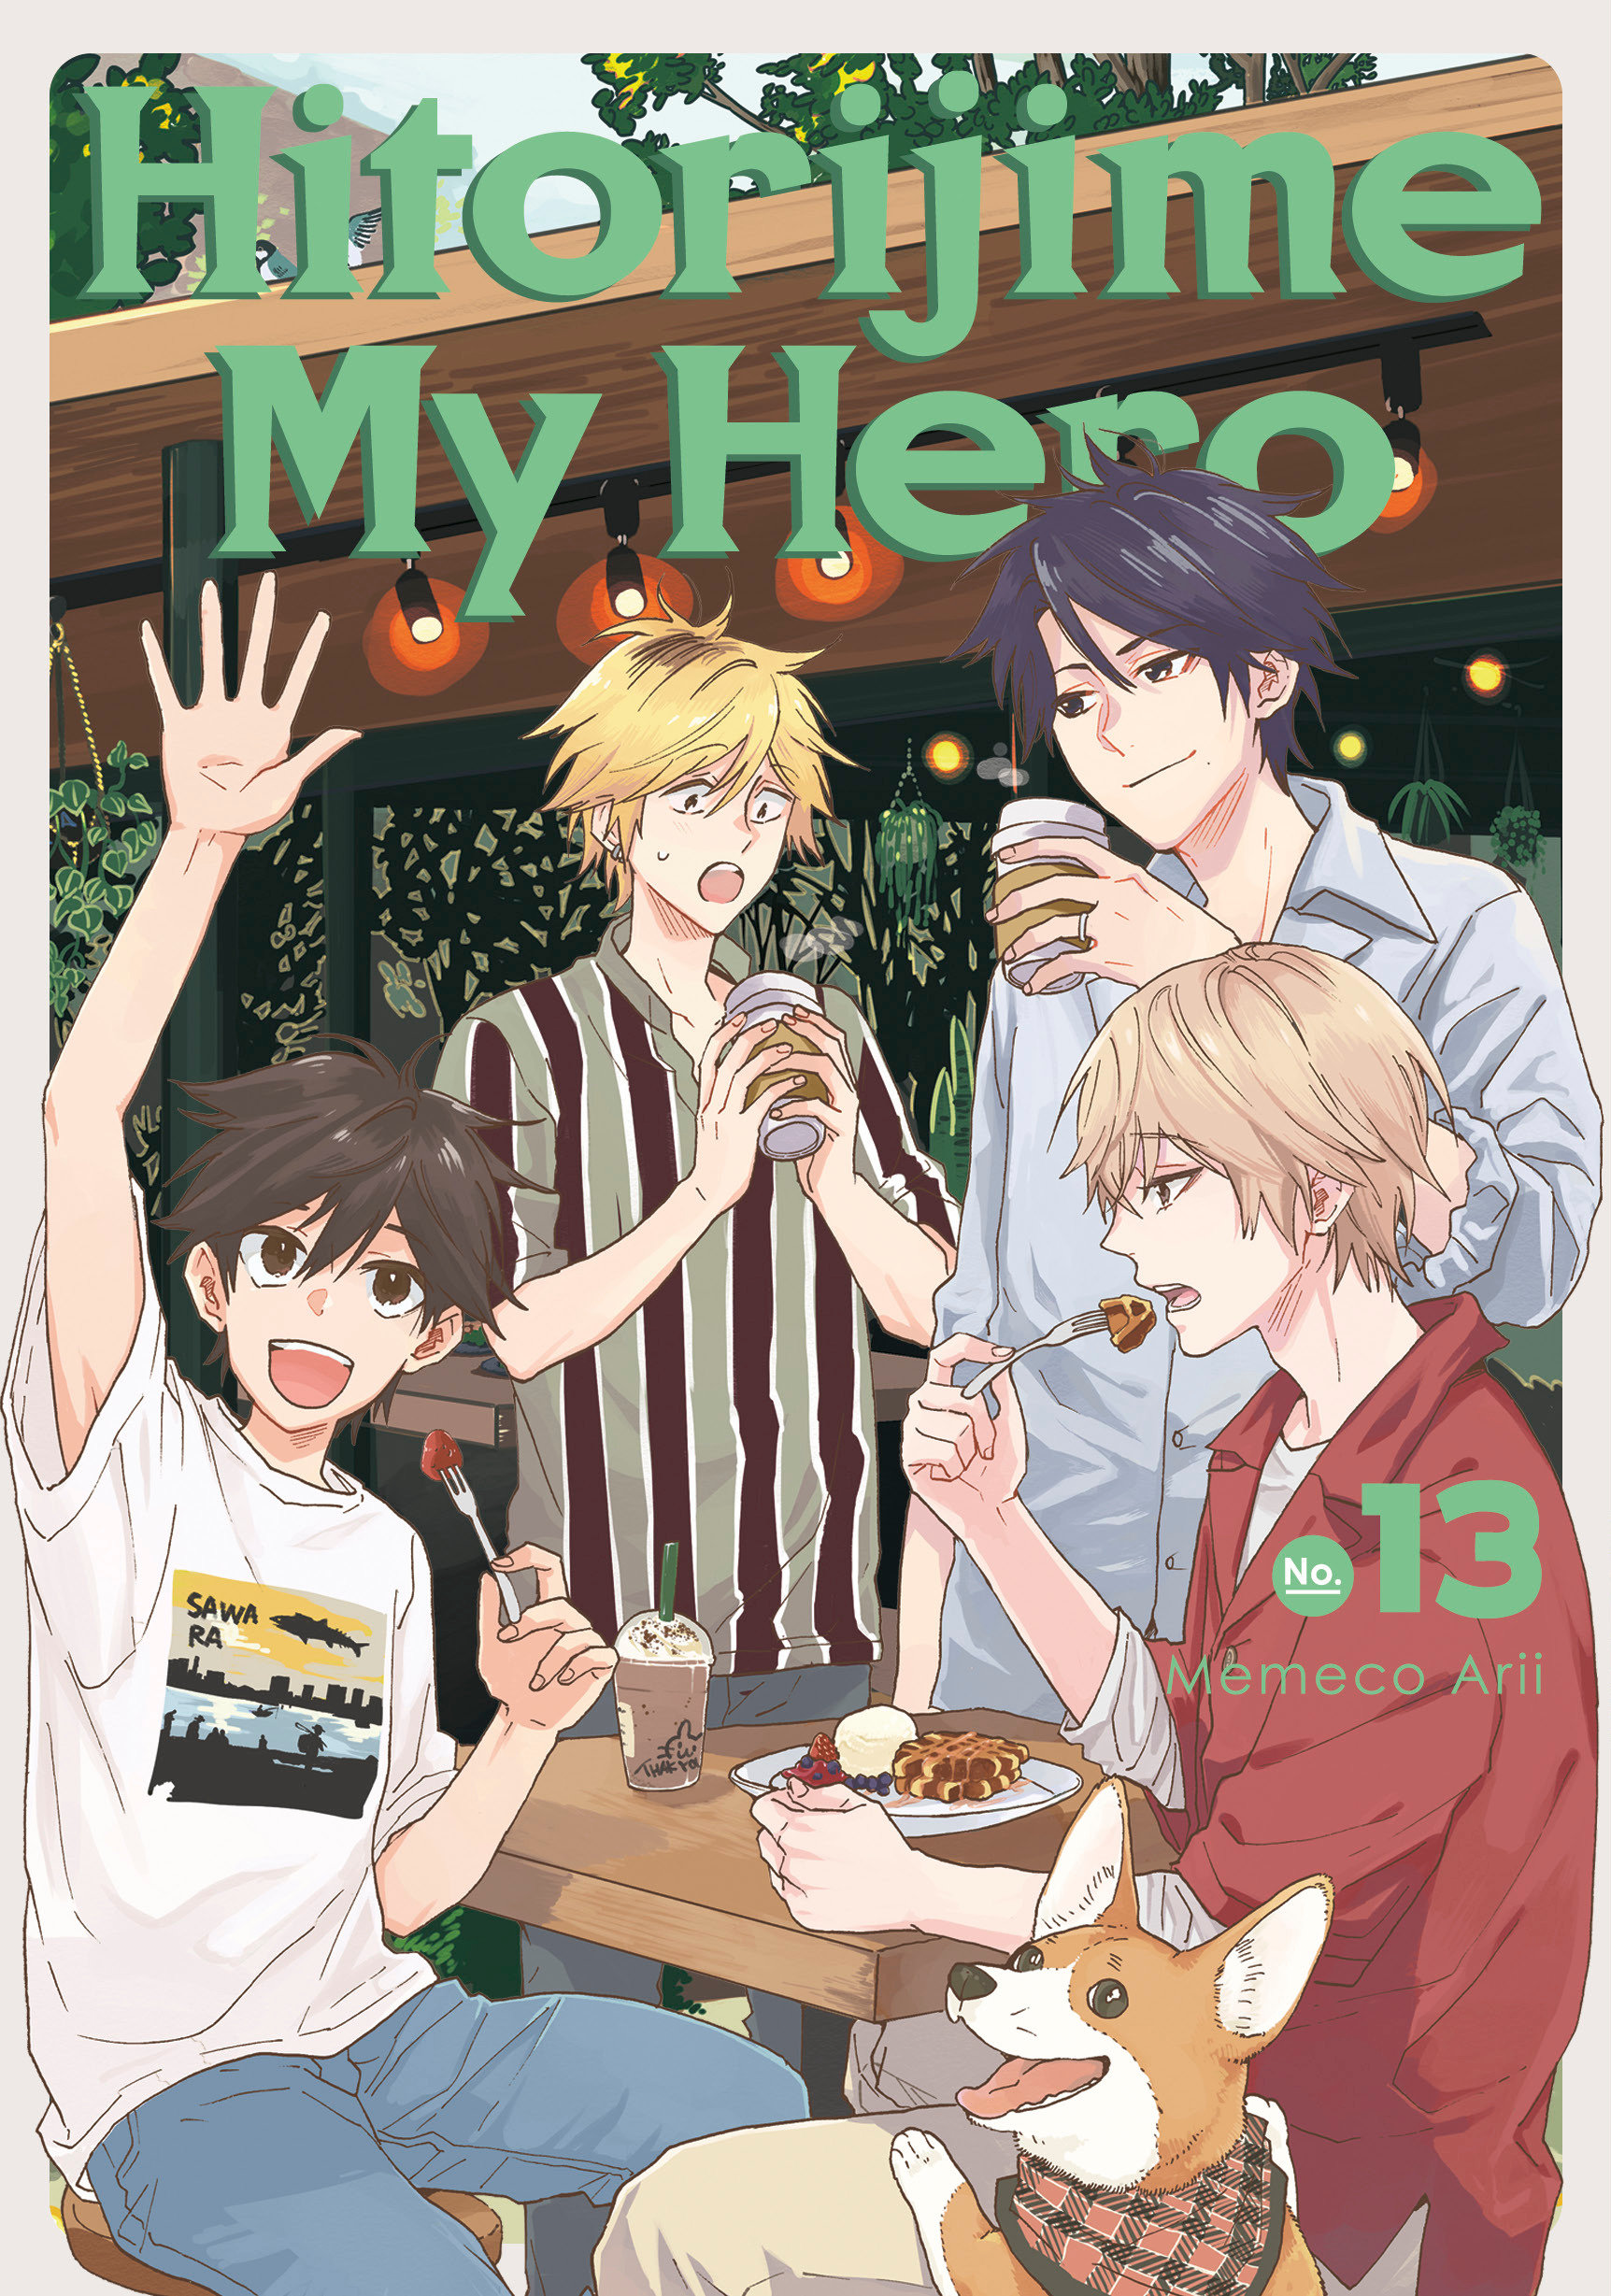 Hitorijime My Hero Manga Volume 13 (Mature)